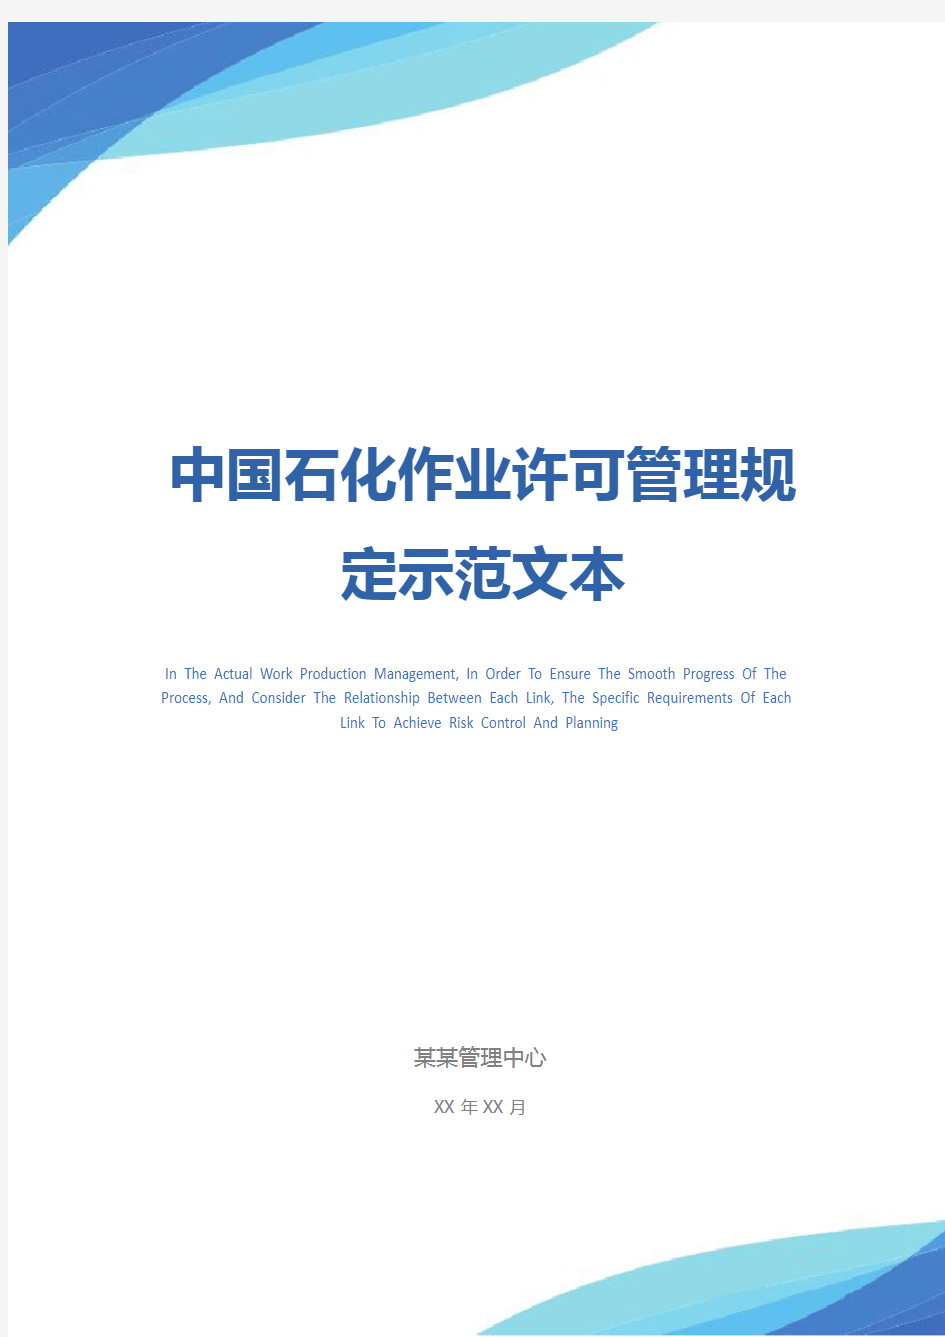 中国石化作业许可管理规定示范文本